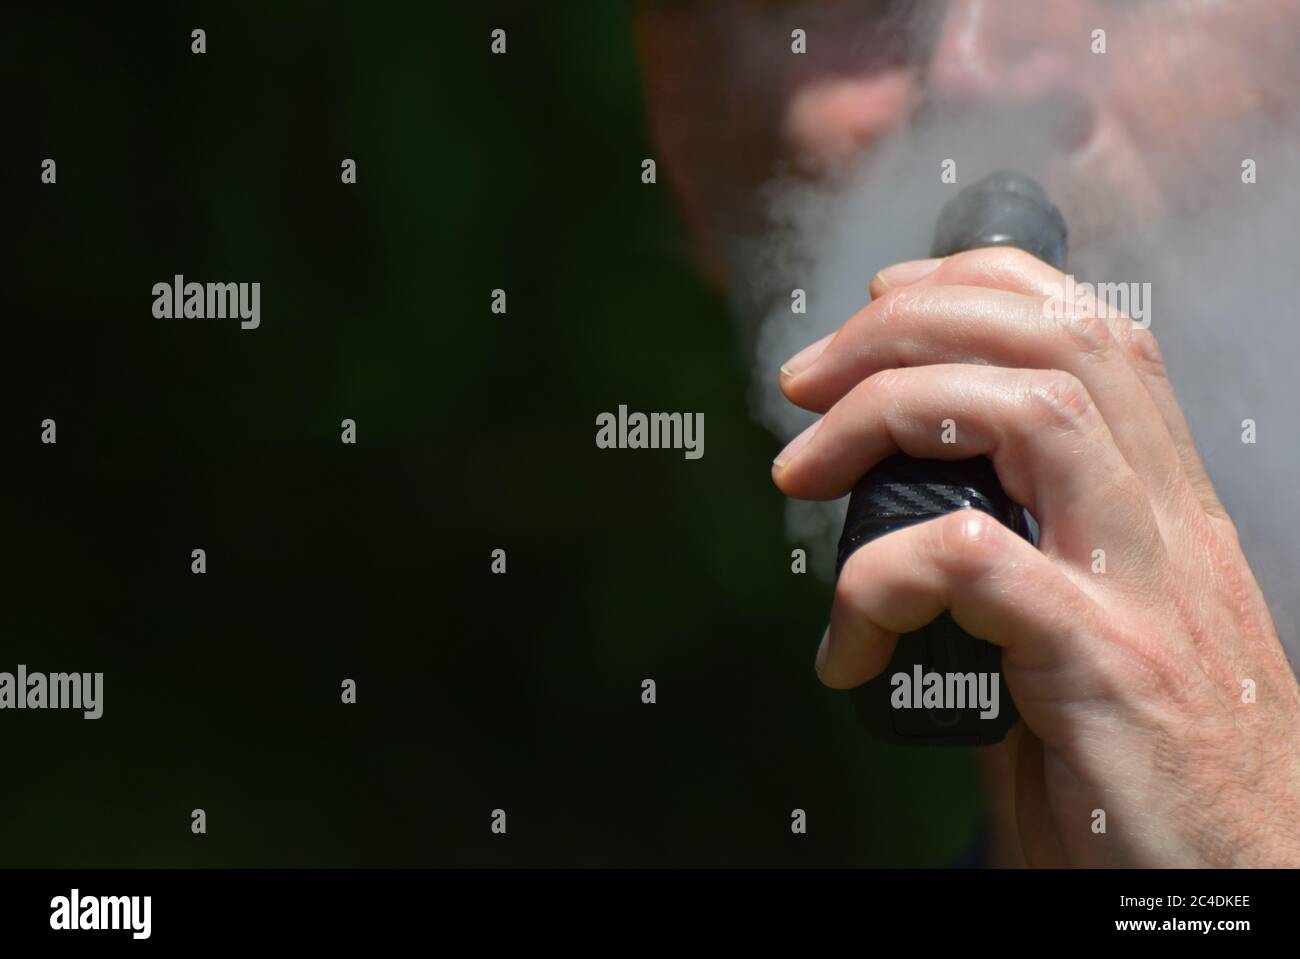 Un uomo che vaping con fuoco sulla sua mano come tiene la sigaretta / vape mod fino alla sua bocca mentre espala vapore Foto Stock